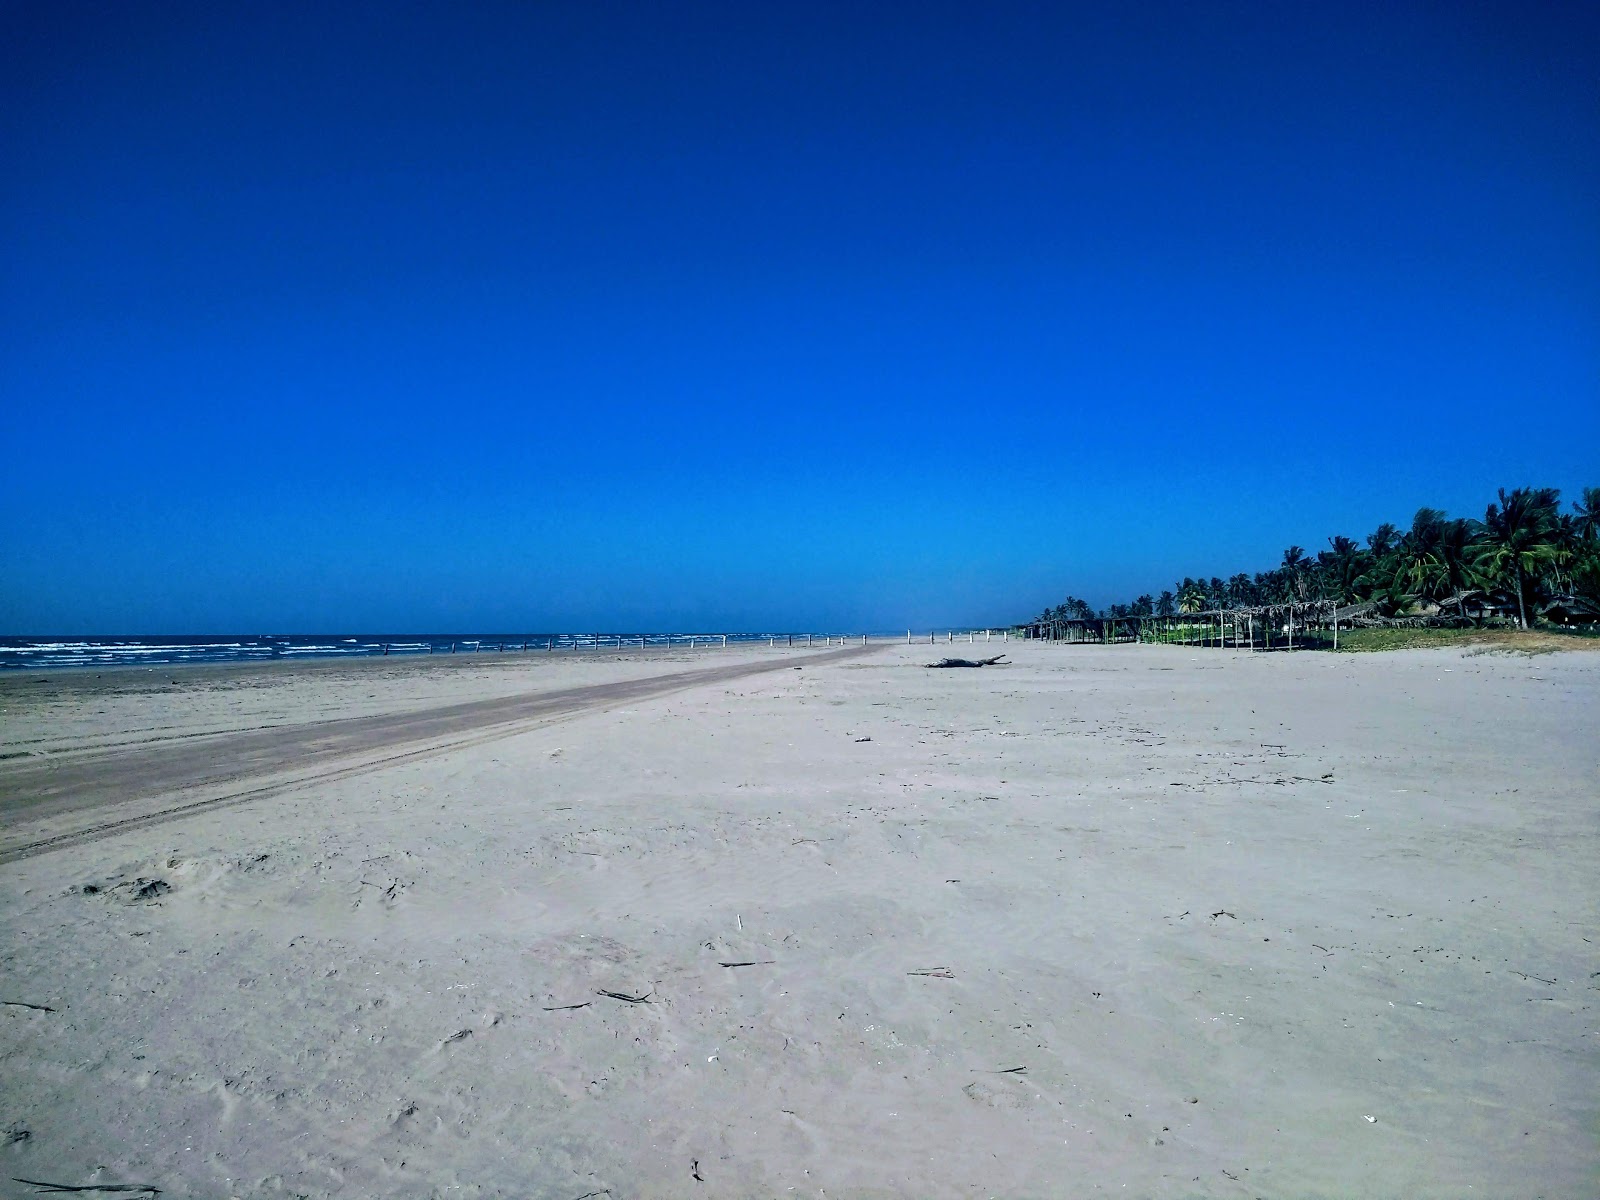 Zdjęcie Novillero Nayarit beach z powierzchnią turkusowa woda